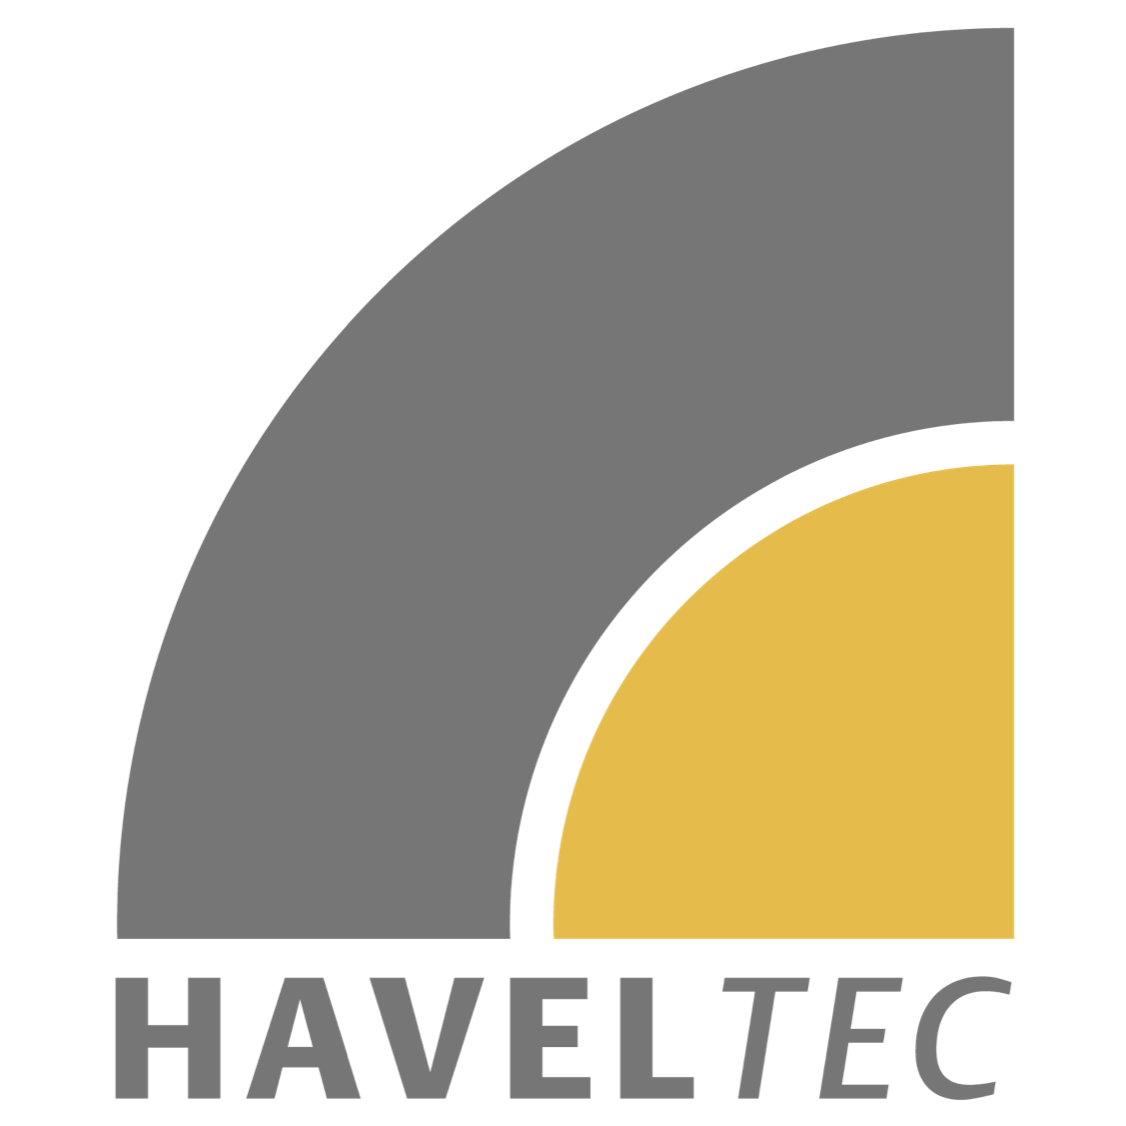 Havel Tec in Werder an der Havel - Logo